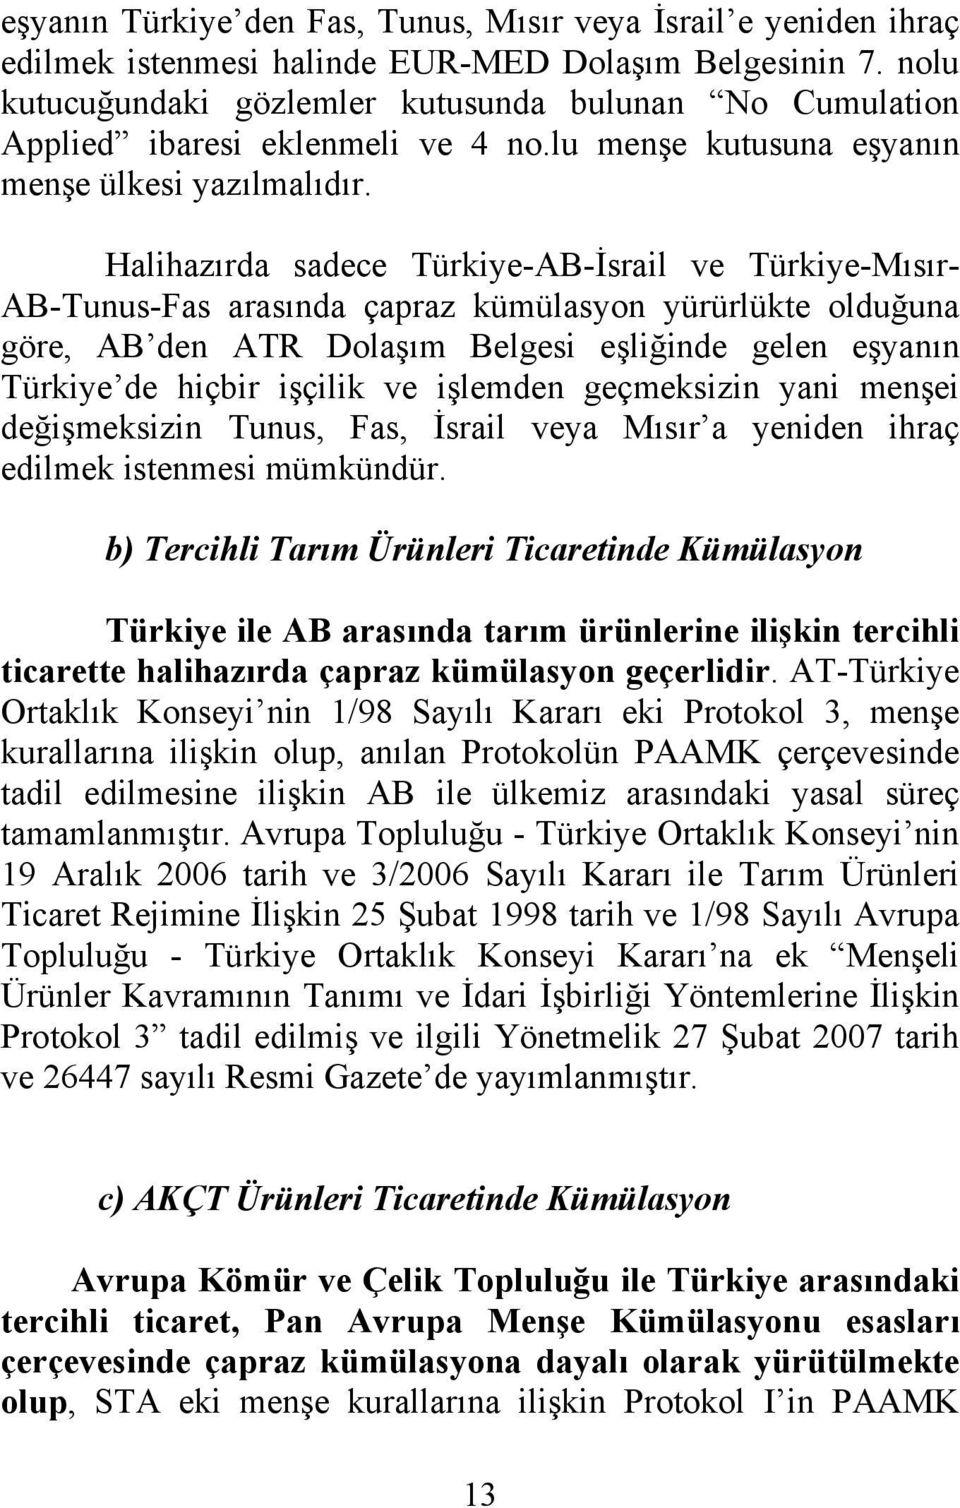 Halihazırda sadece Türkiye-AB-İsrail ve Türkiye-Mısır- AB-Tunus-Fas arasında çapraz kümülasyon yürürlükte olduğuna göre, AB den ATR Dolaşım Belgesi eşliğinde gelen eşyanın Türkiye de hiçbir işçilik